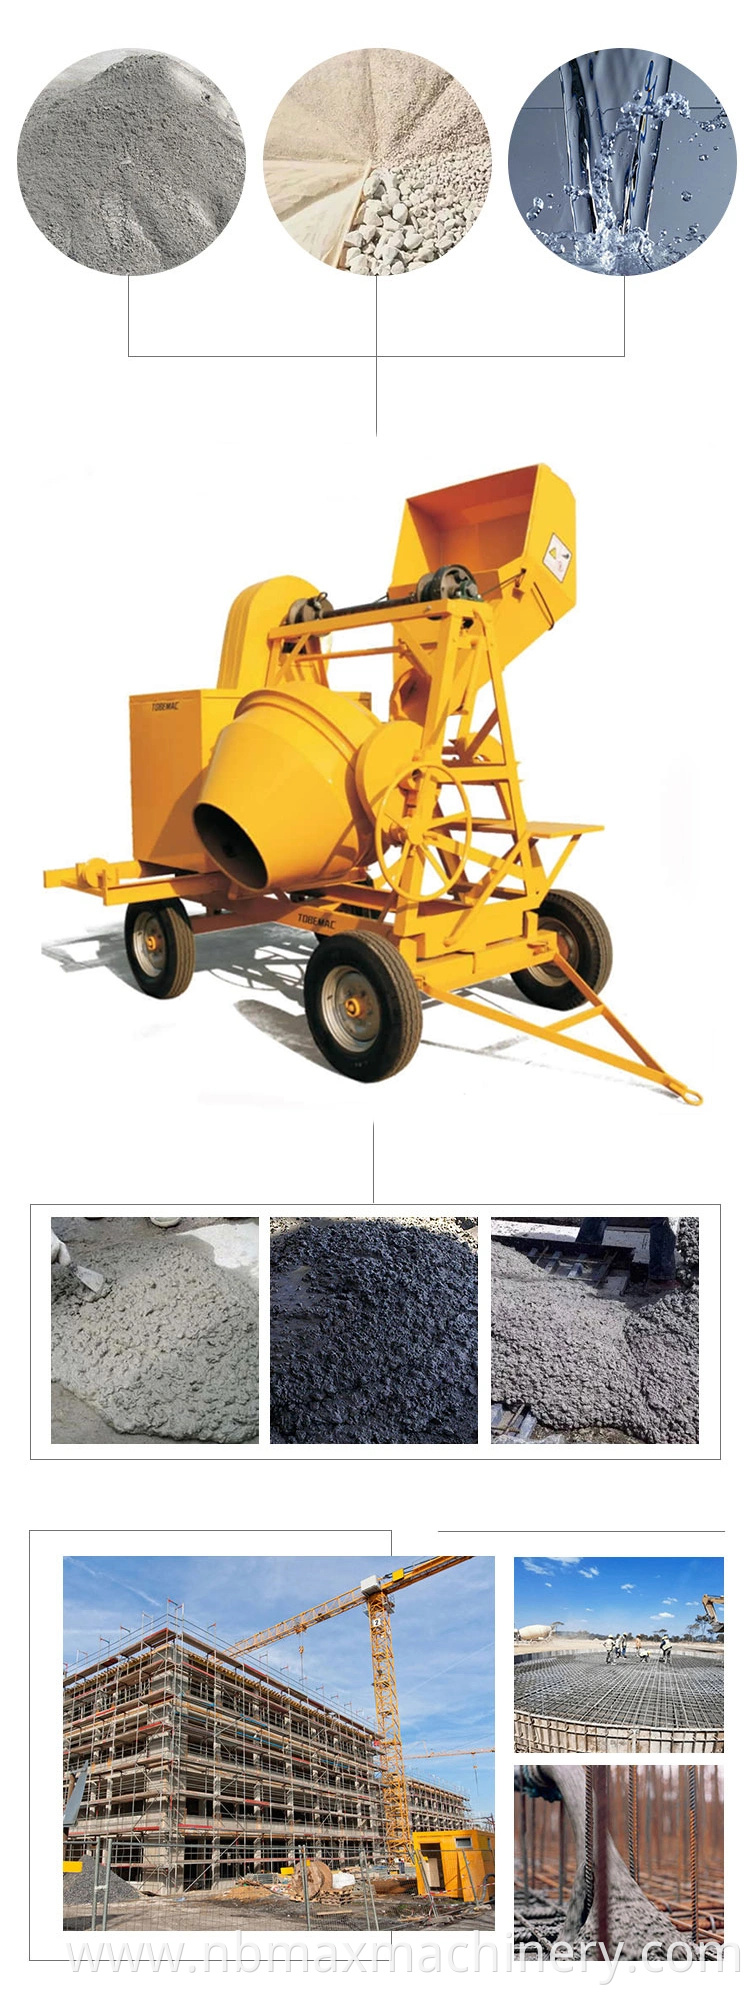 510L Diesel Cement Mixer with Winch / Diesel Engine Concrete Mixer Machine Price